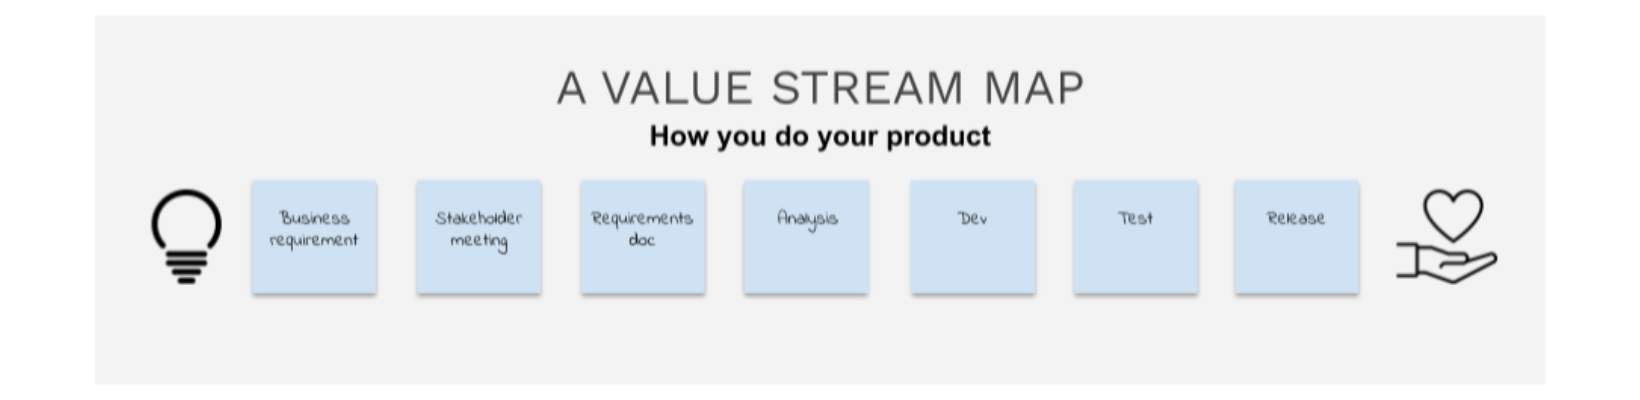 Value stream map